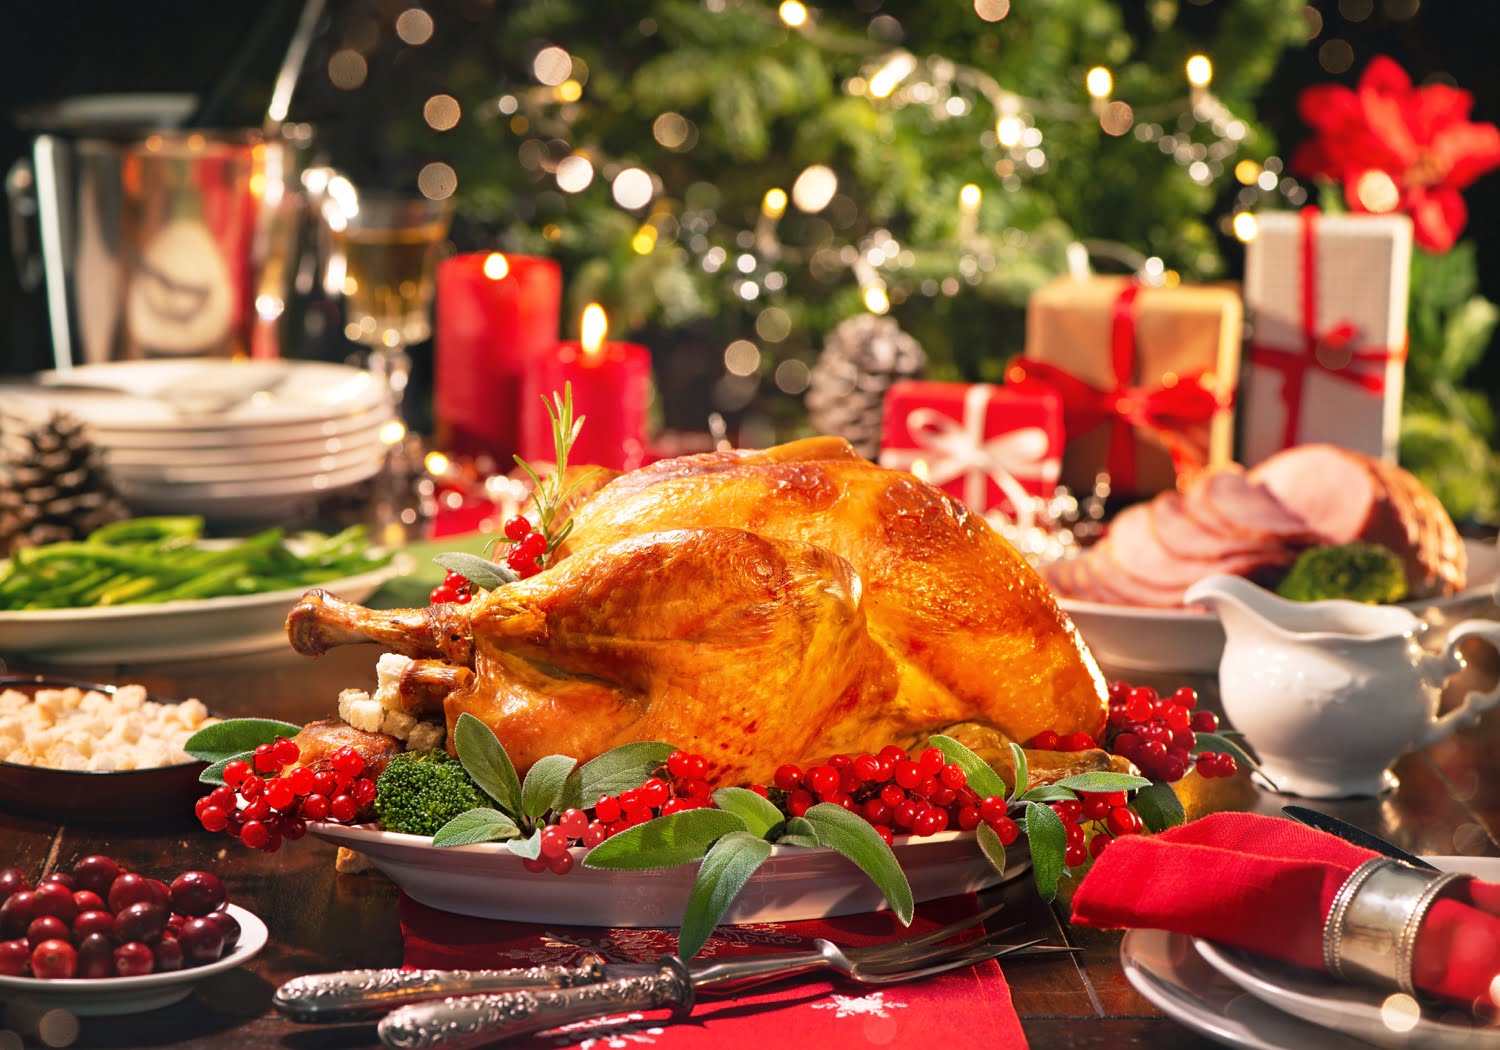 Cena navideña completa, fácil y deliciosa ¡para compartir en familia! -  Vivir Mejor